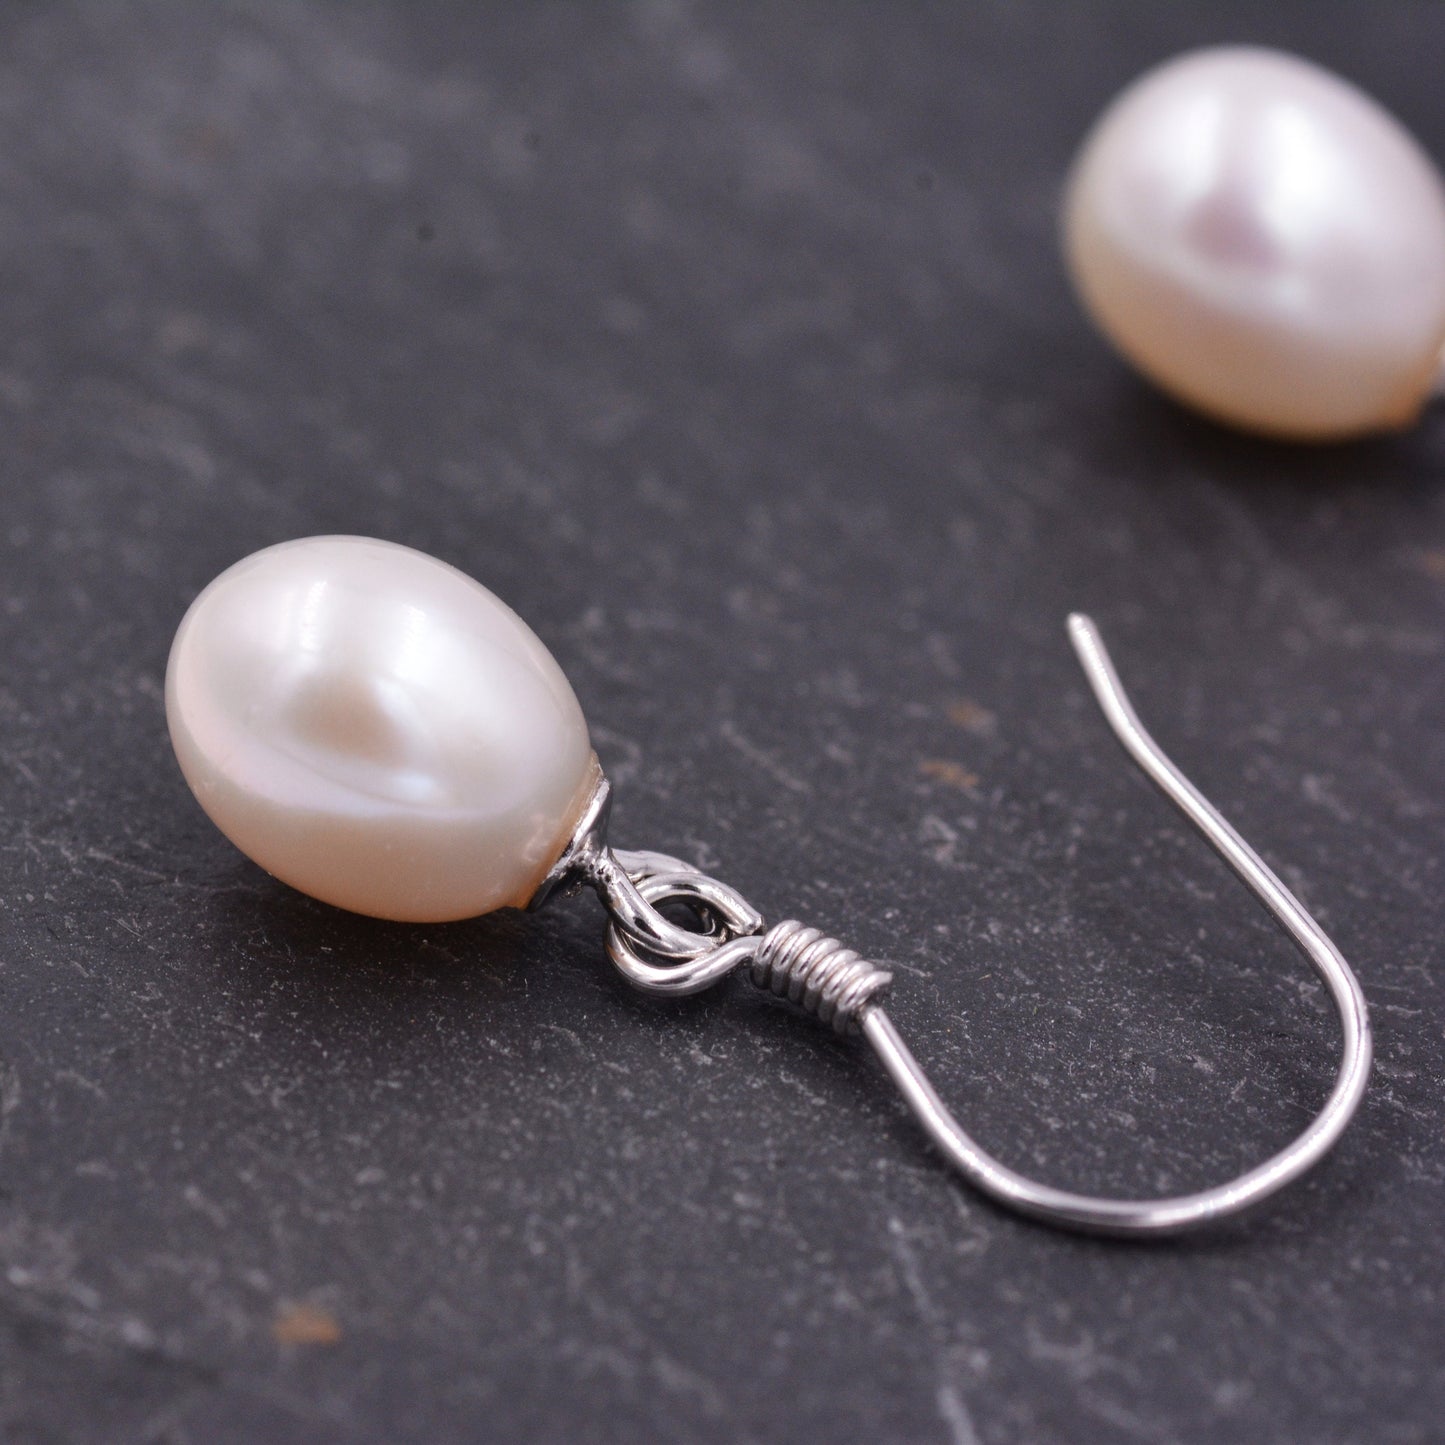 Freshwater Pearl Drop Hook Earrings in Sterling Silver, Genuine Oval Pearls, Real Pearl Drop Earrings